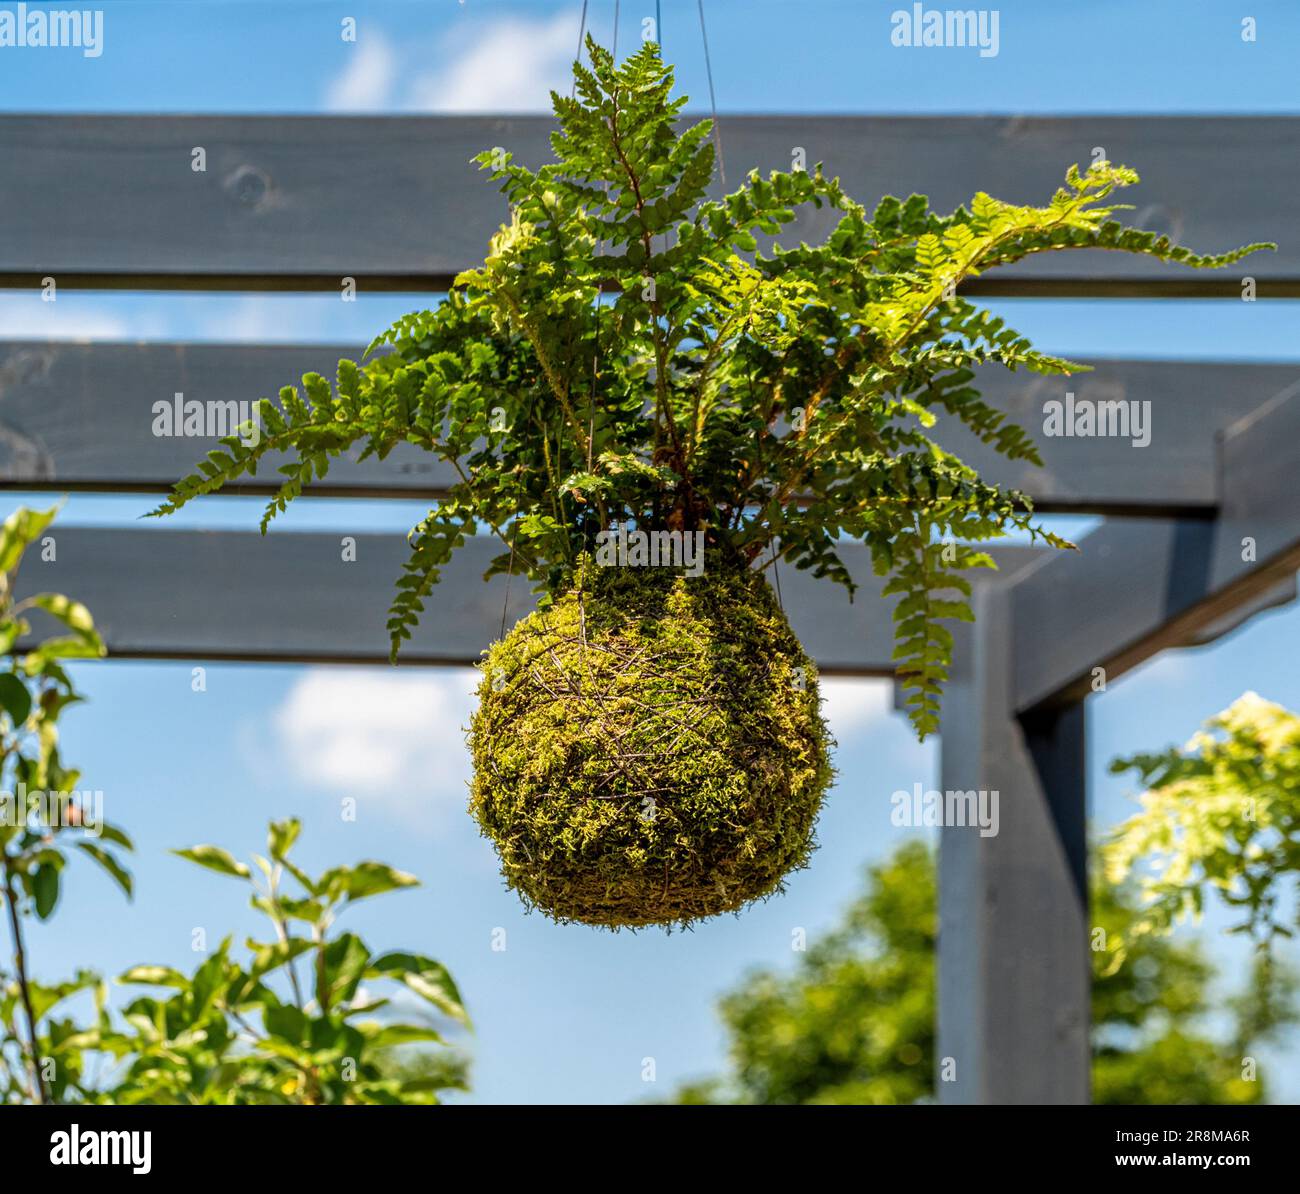 L'art japonais de Kokedama. Ballon de mousse contenant une plante de fougères suspendue d'une pergola en bois, vue contre un ciel bleu, dans un jardin britannique. Banque D'Images